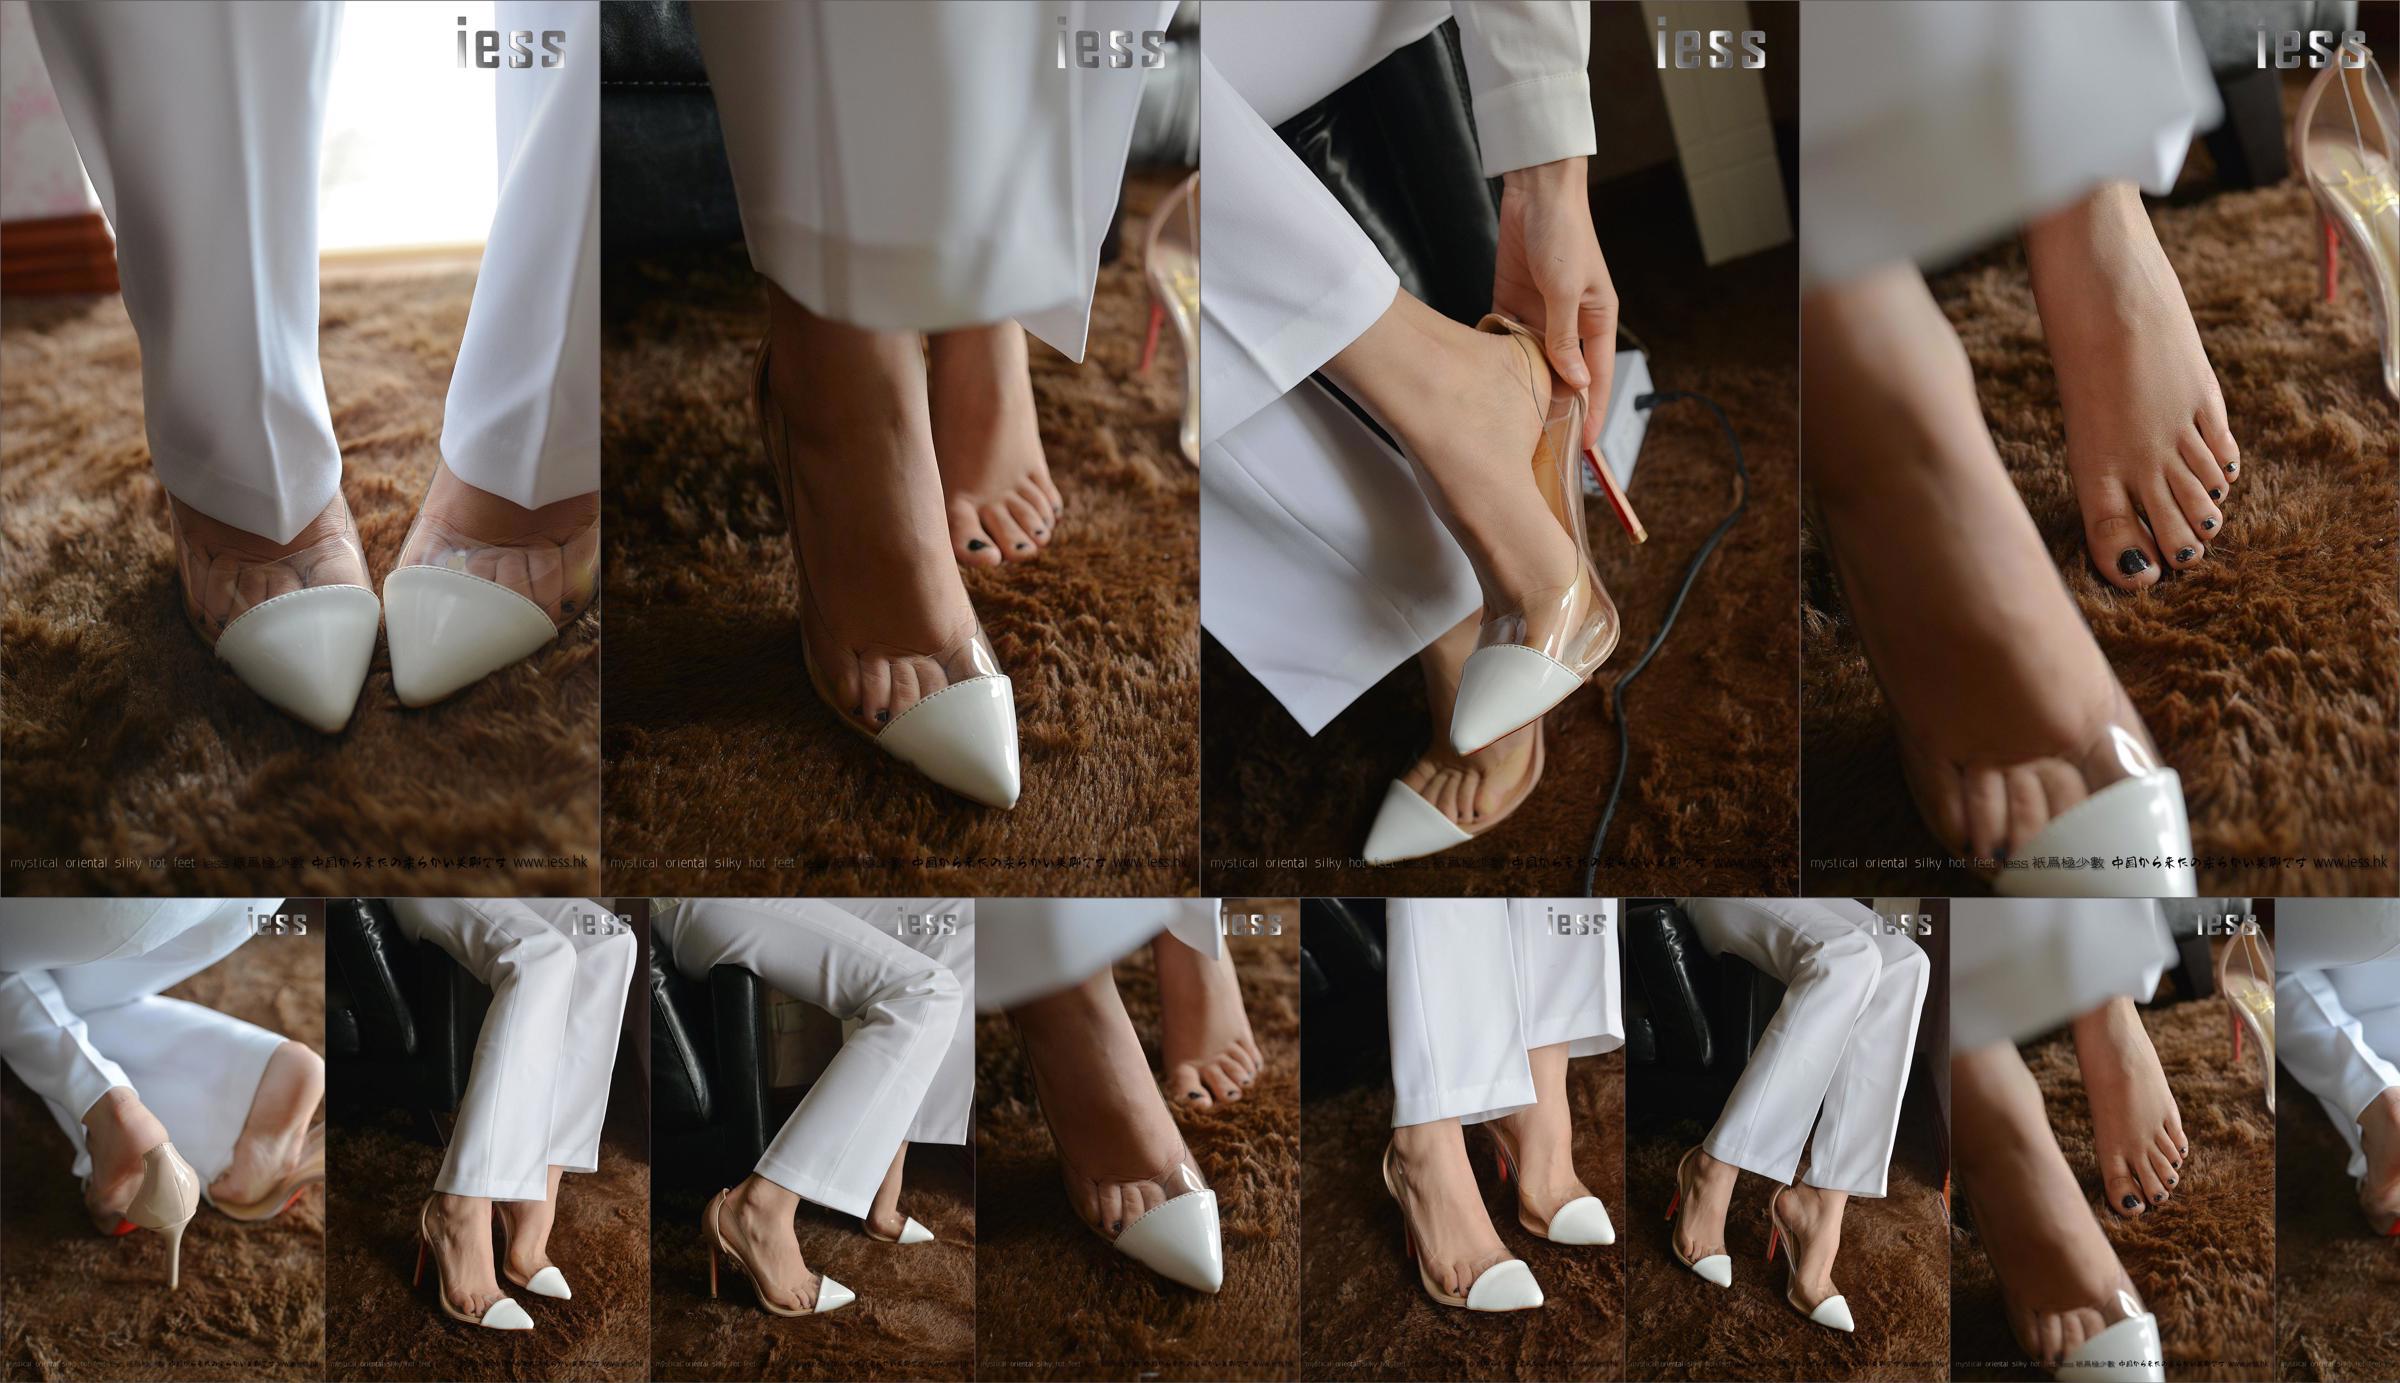 Silky Foot Bento 058 Hồi hộp "Bộ sưu tập-Giày cao gót chân trần" [IESS Wei Si Fun Xiang] No.f27782 Trang 50